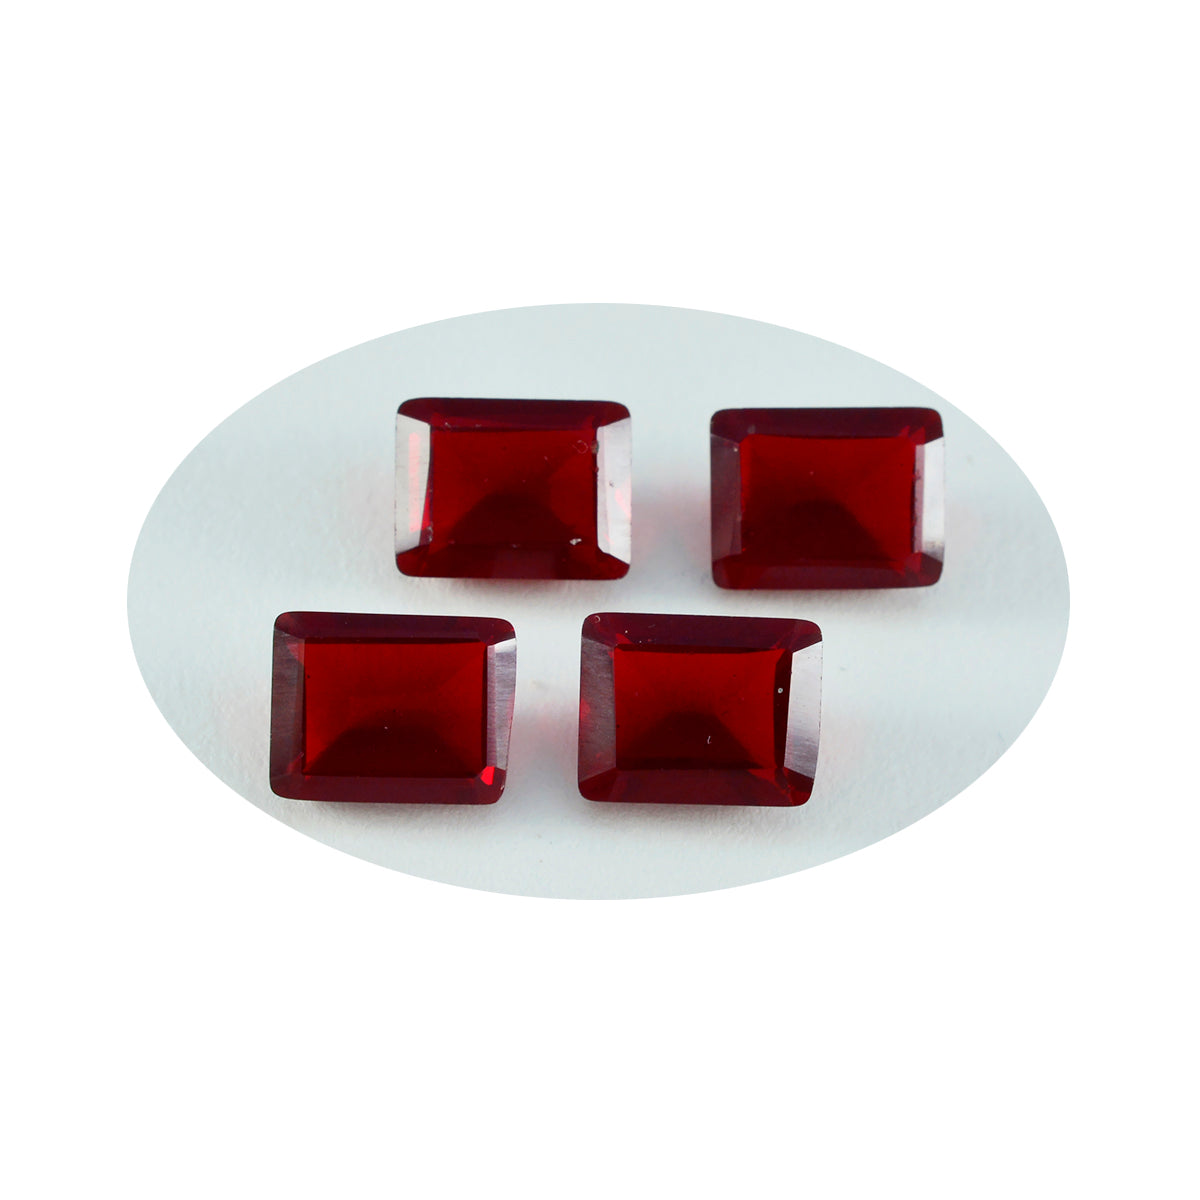 Riyogems 1 Stück roter Rubin mit CZ, facettiert, 10 x 12 mm, Achteckform, schöne, hochwertige lose Edelsteine